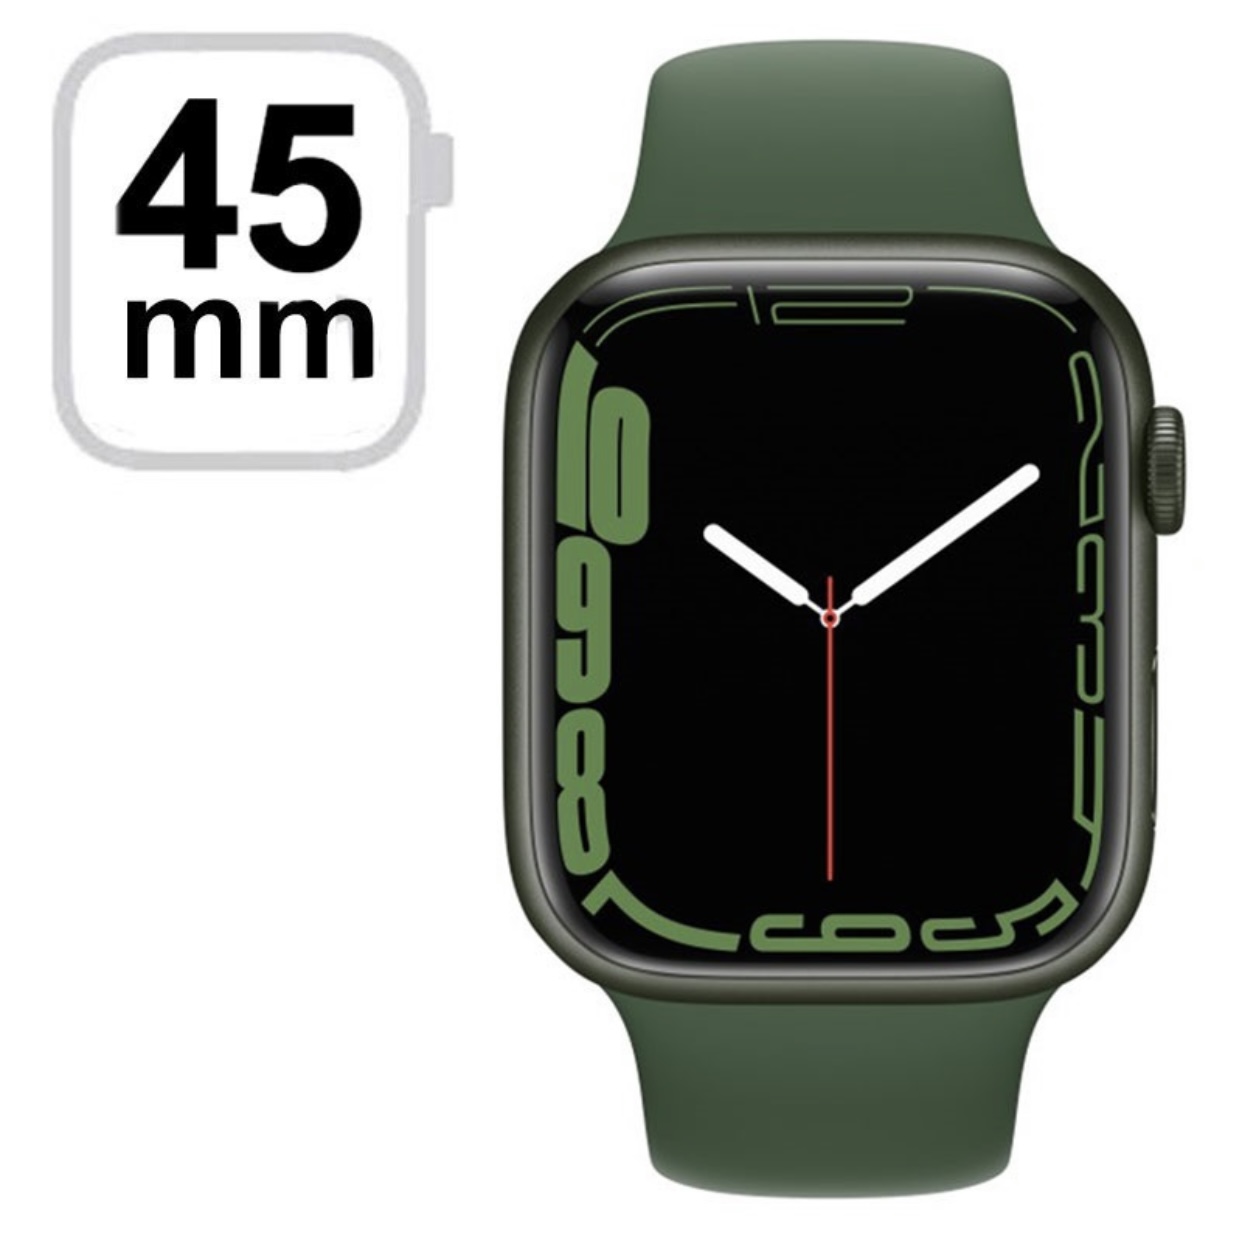 Apple Watch Serie 7 45mm  Apple Watch Serie 7 45mm Gps + Cellulaire scellé disponible chez Ziza Phone. Vente sur facture avec garantie. Possibilité d’échange et de livraison 